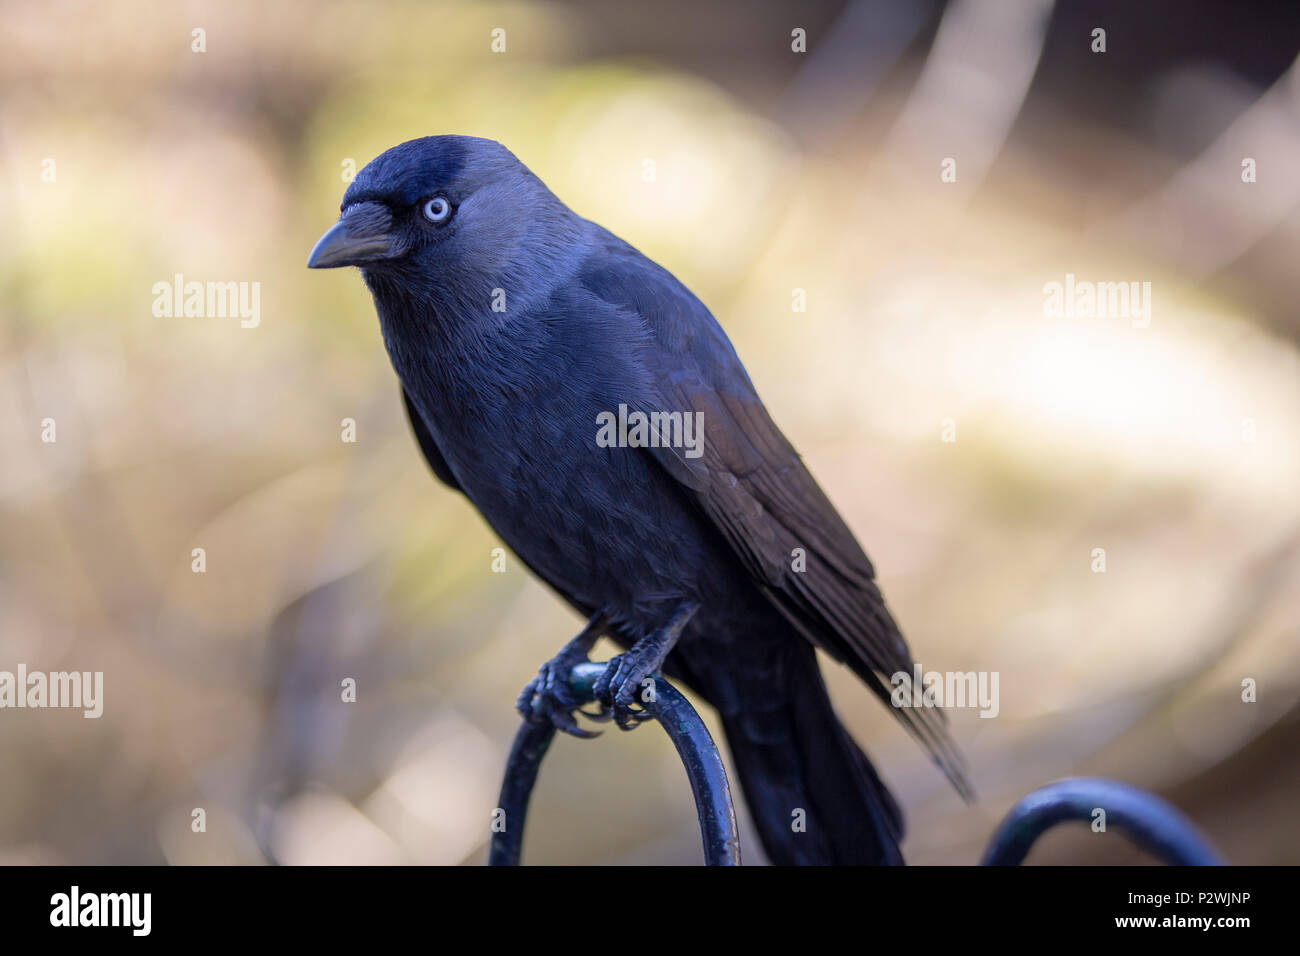 Bird (crow) close up Stock Photo